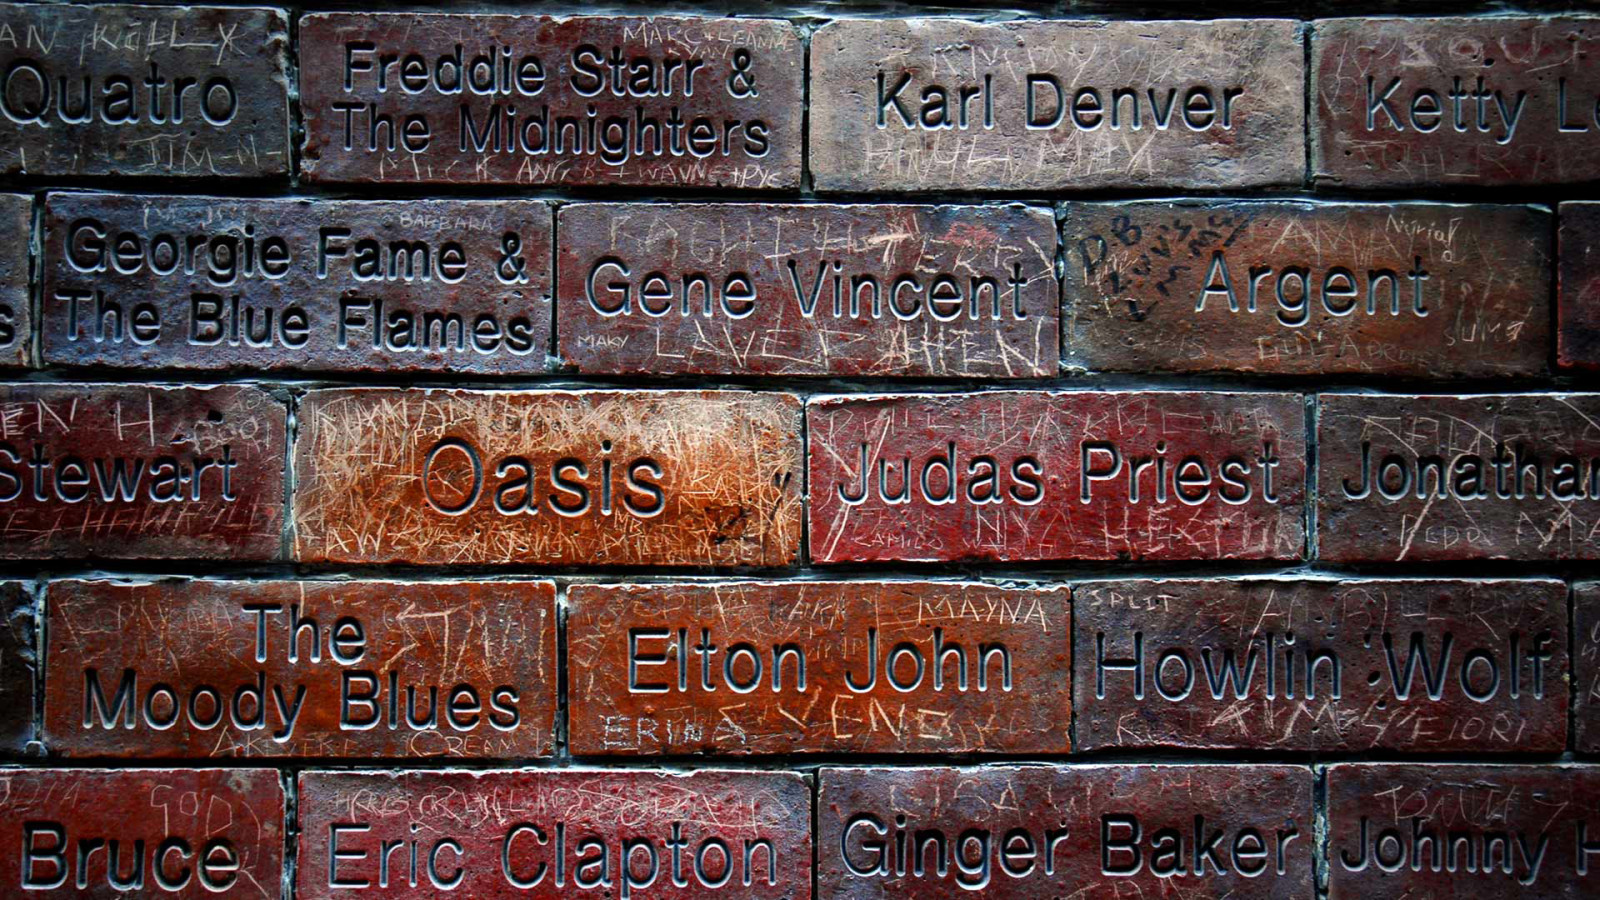 Inggris, Liverpool, Mathew Street, Wall Of Fame